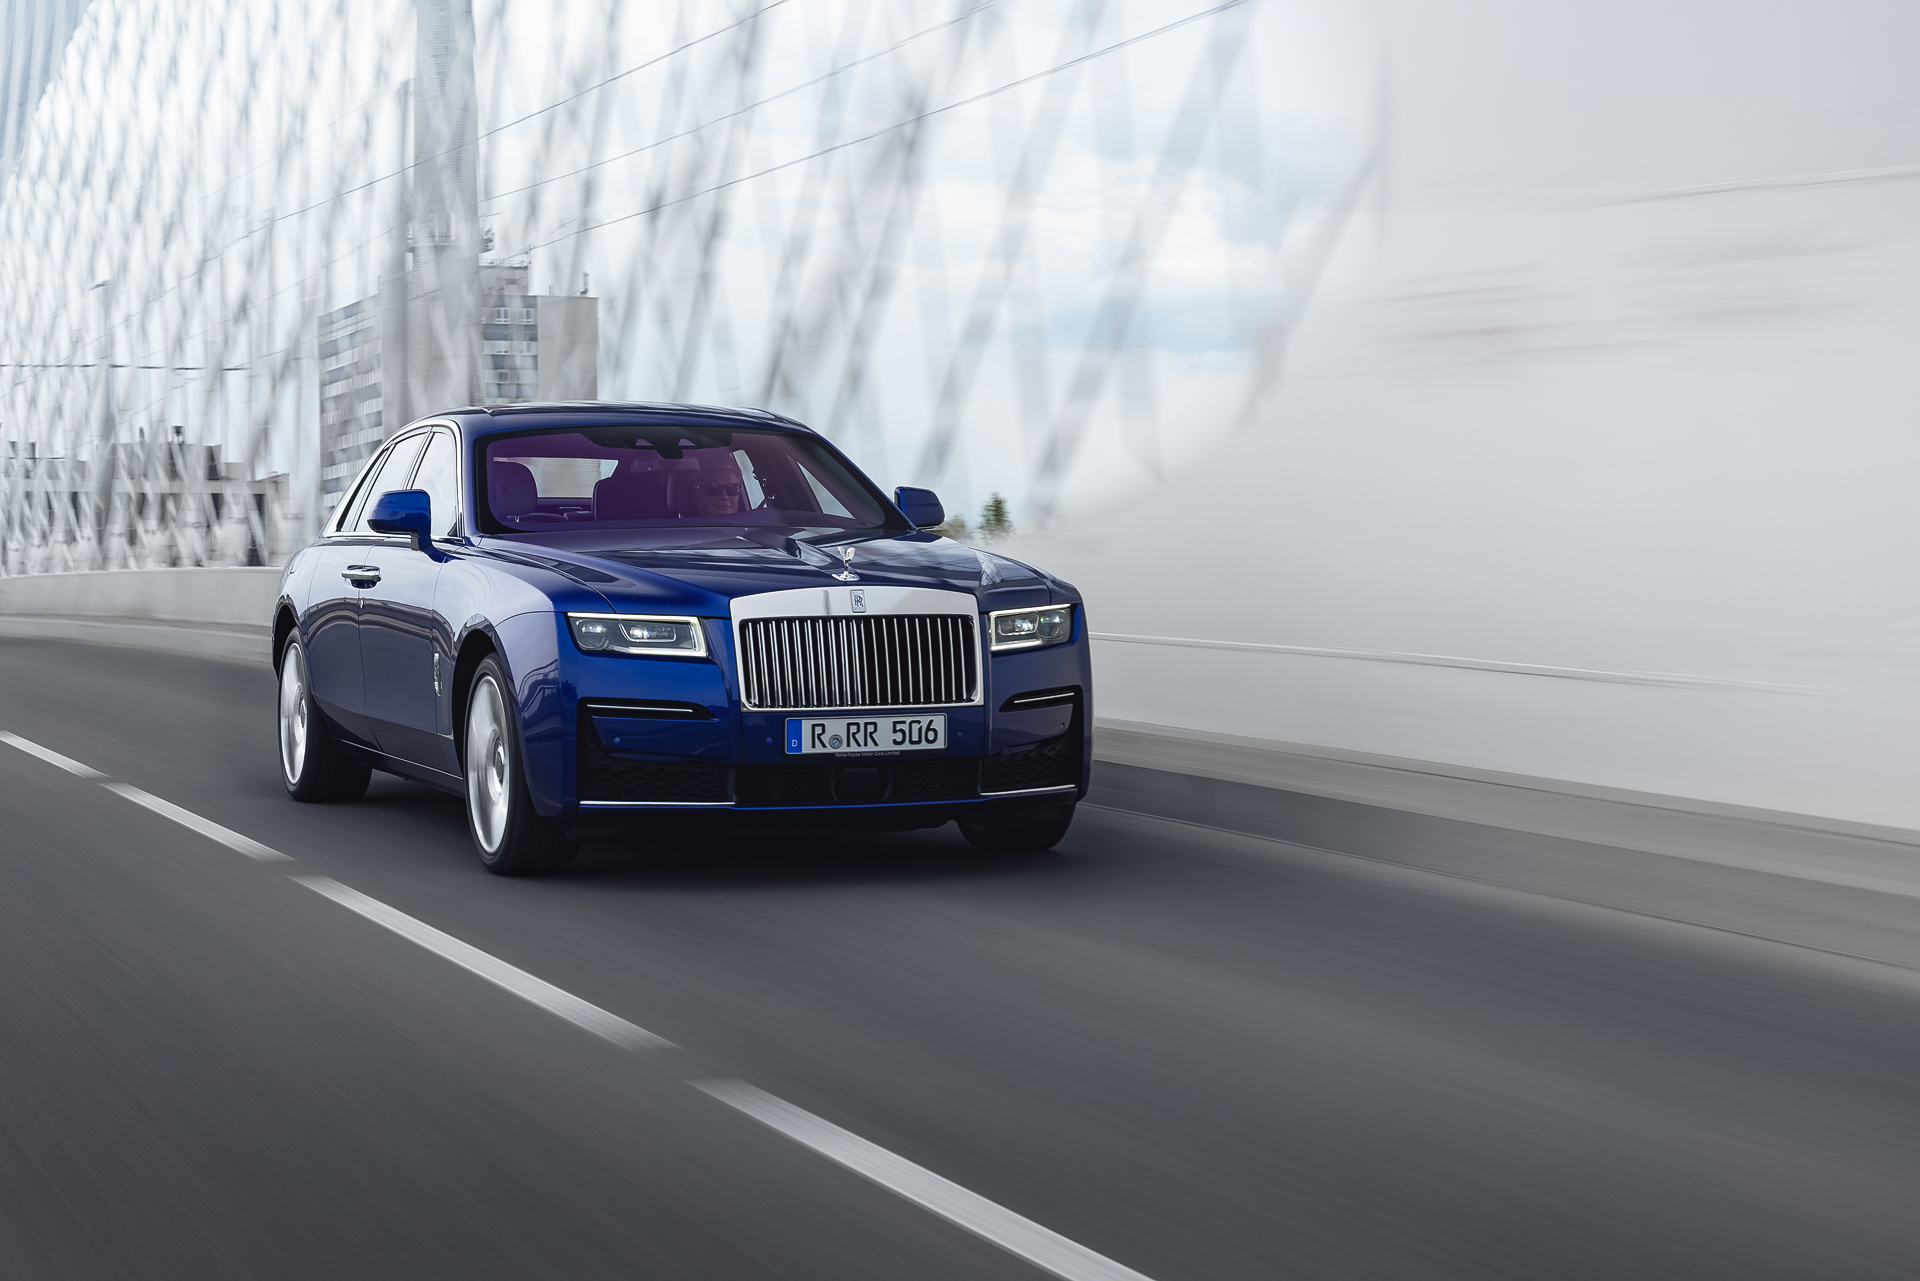 Cập nhật bảng giá xe Rolls Royce mới nhất năm 2020